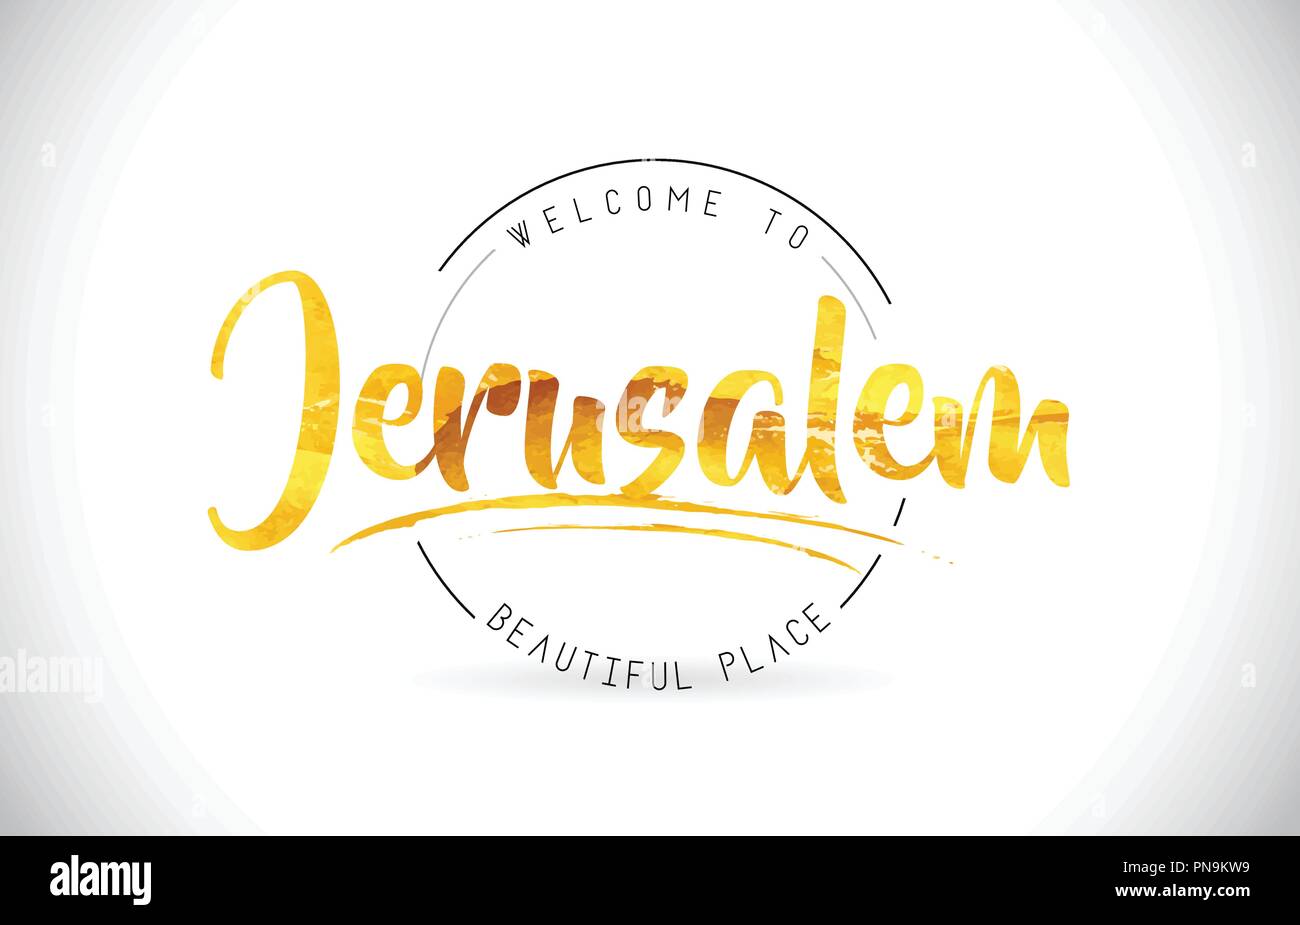 Gerusalemme Benvenuti alla parola del testo con font manoscritta e texture dorata Design Illustrazione Vettore. Illustrazione Vettoriale